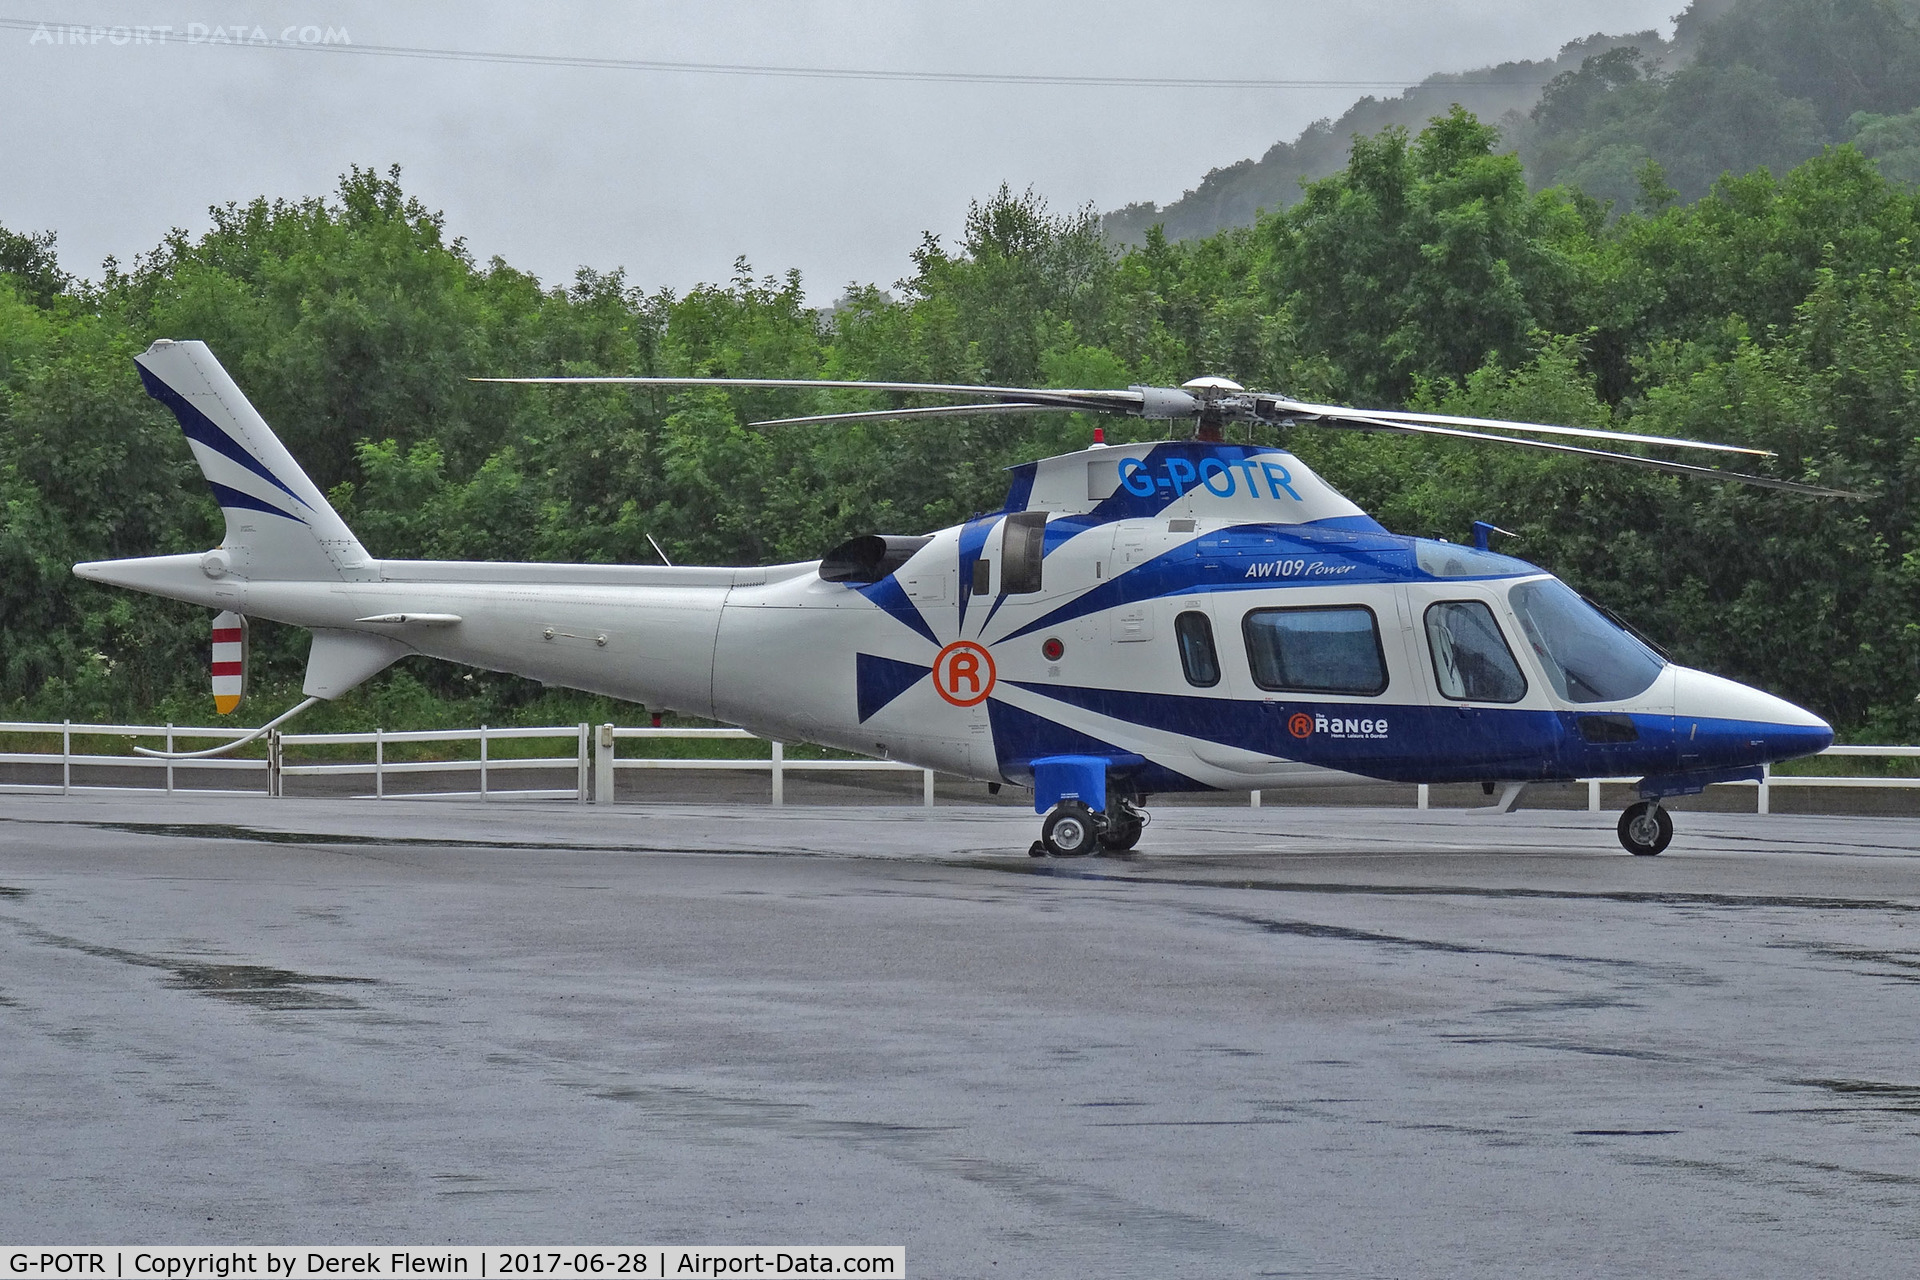 G-POTR, 1999 Agusta A-109E Power C/N 11043, A-109E Power, Castle Air Liskeard Heliport based, previously N109GR, N195NJ, G-OFTC, seen parked up.